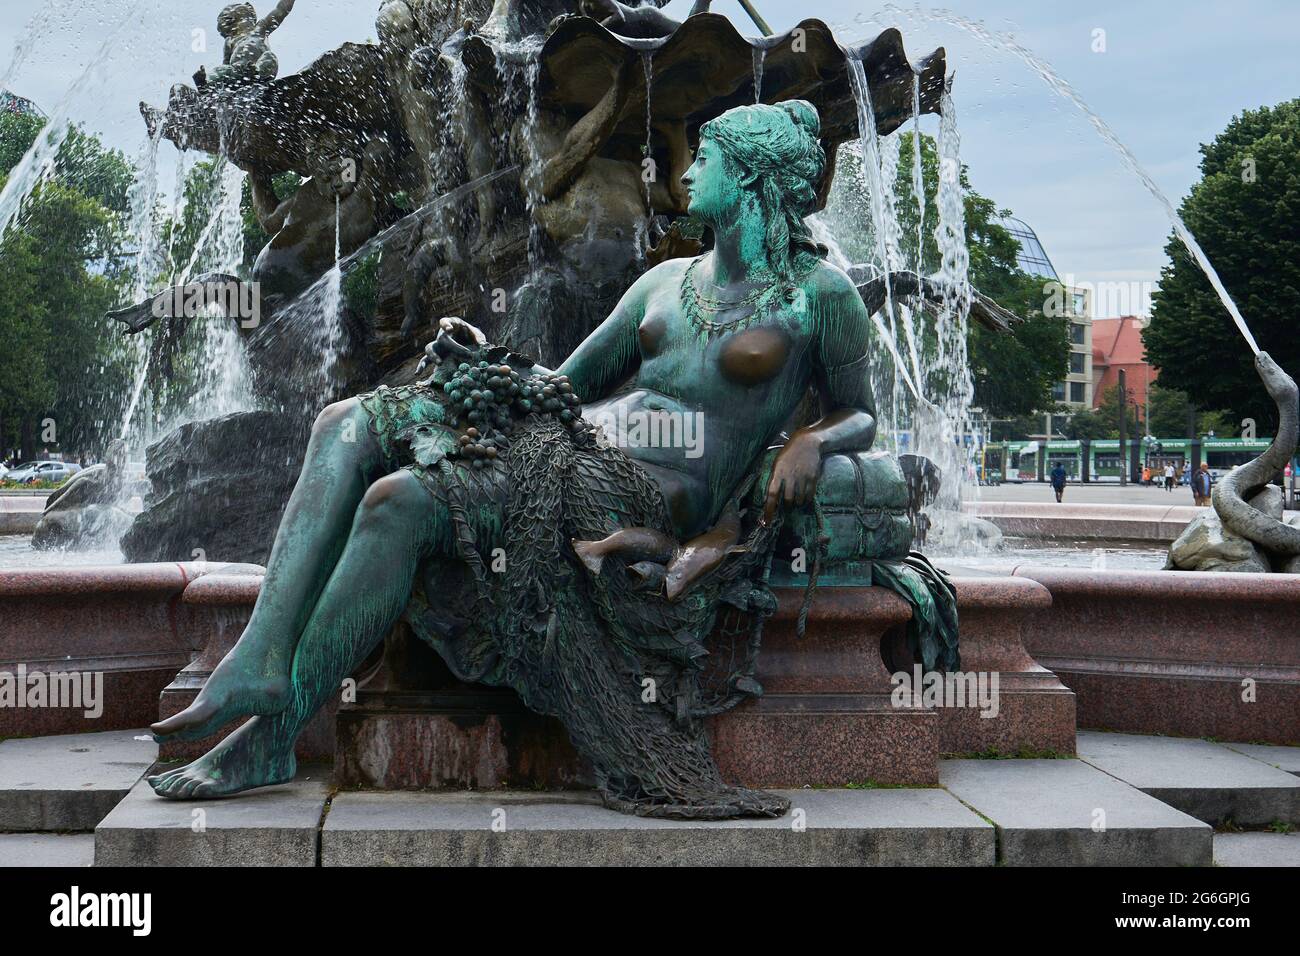 Frauenfigur, verkörpert den Fluss Rhein, Neptunbrunnen, Schlossbrunnen oder Begasbrunnen, von Reinhold Begas, Berlin-Mitte, Berlin, Allemagne Banque D'Images